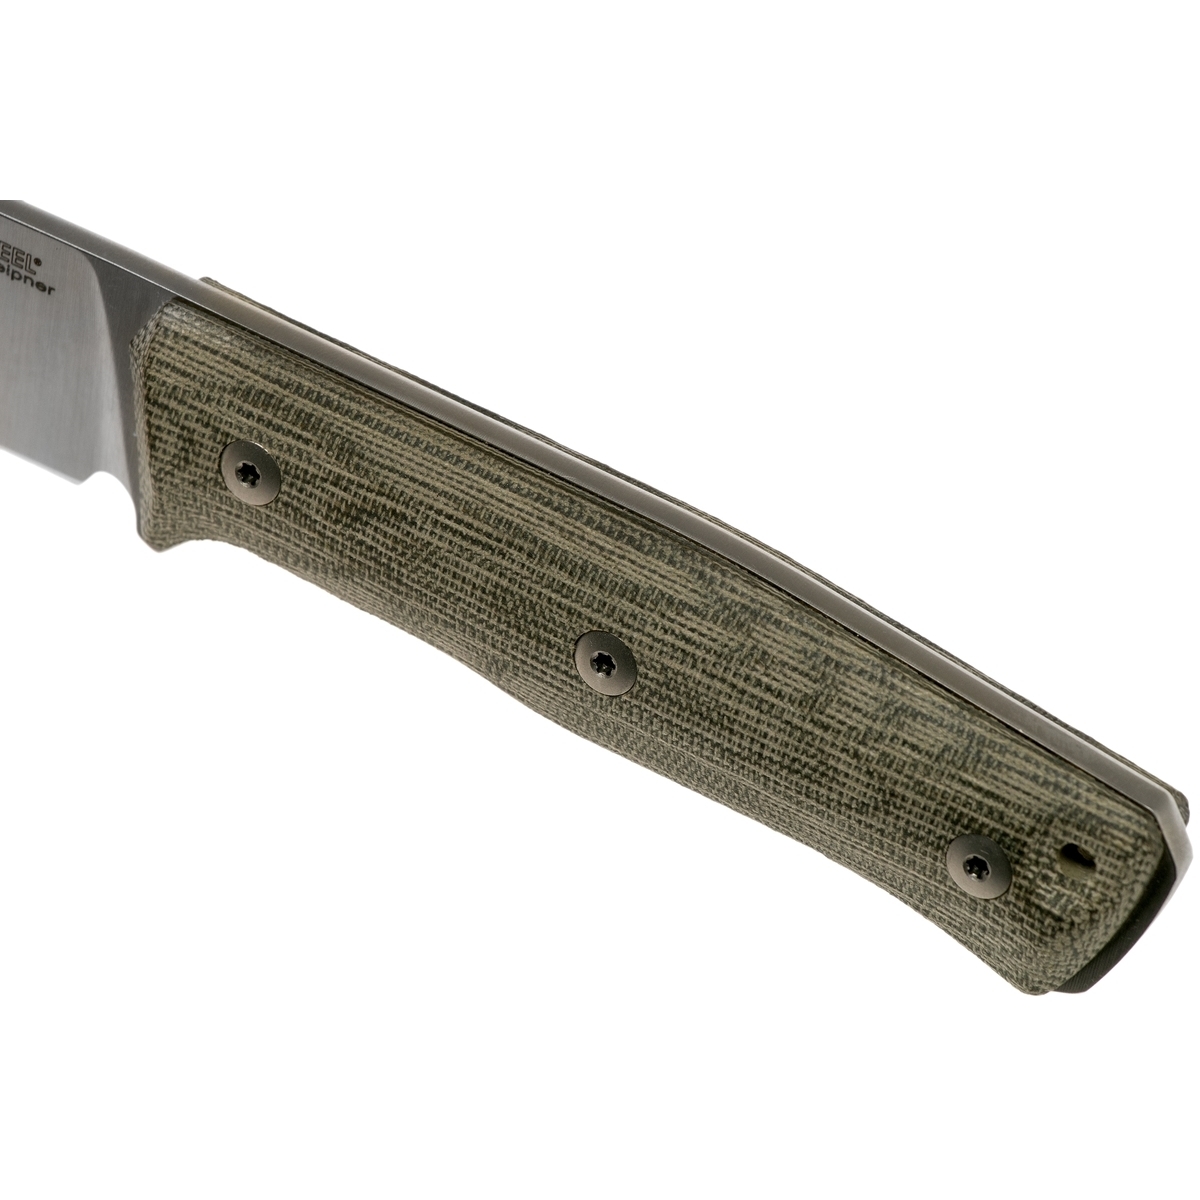 Нож с фиксированным клинком LionSteel B35, сталь Sleipner, рукоять Green canvas micarta - фото 6